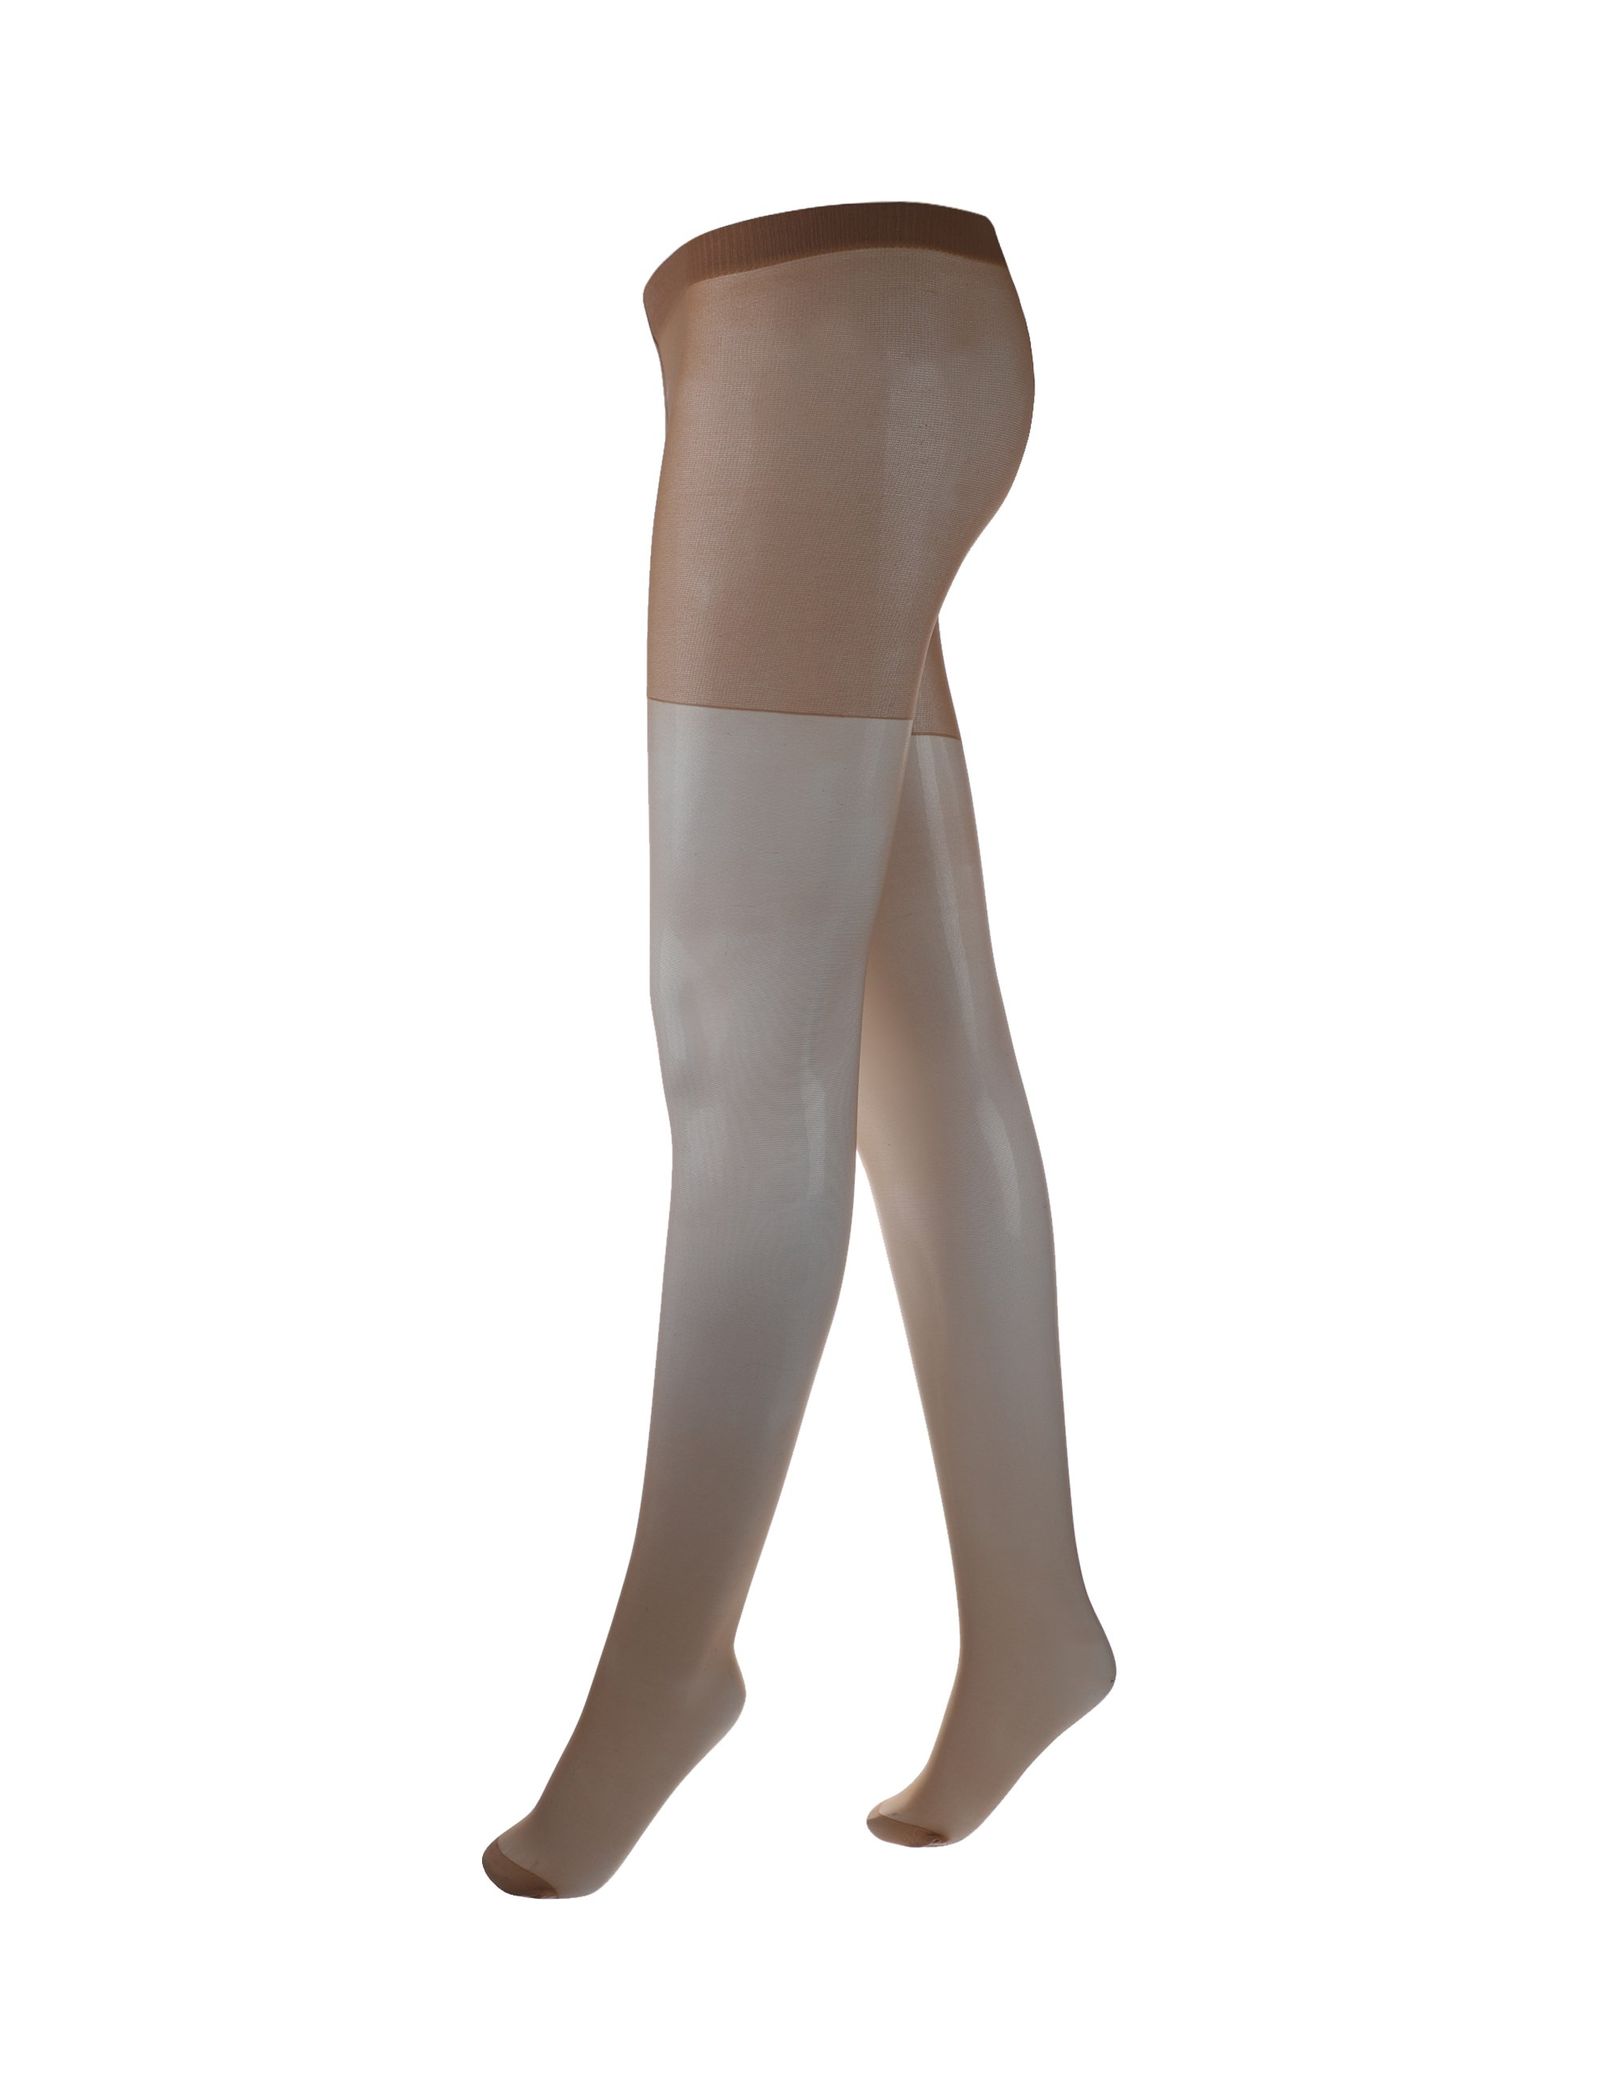 جوراب شلواری شفاف زنانه بسته 3 عددی - دبنهامز - رنگ پا - 4